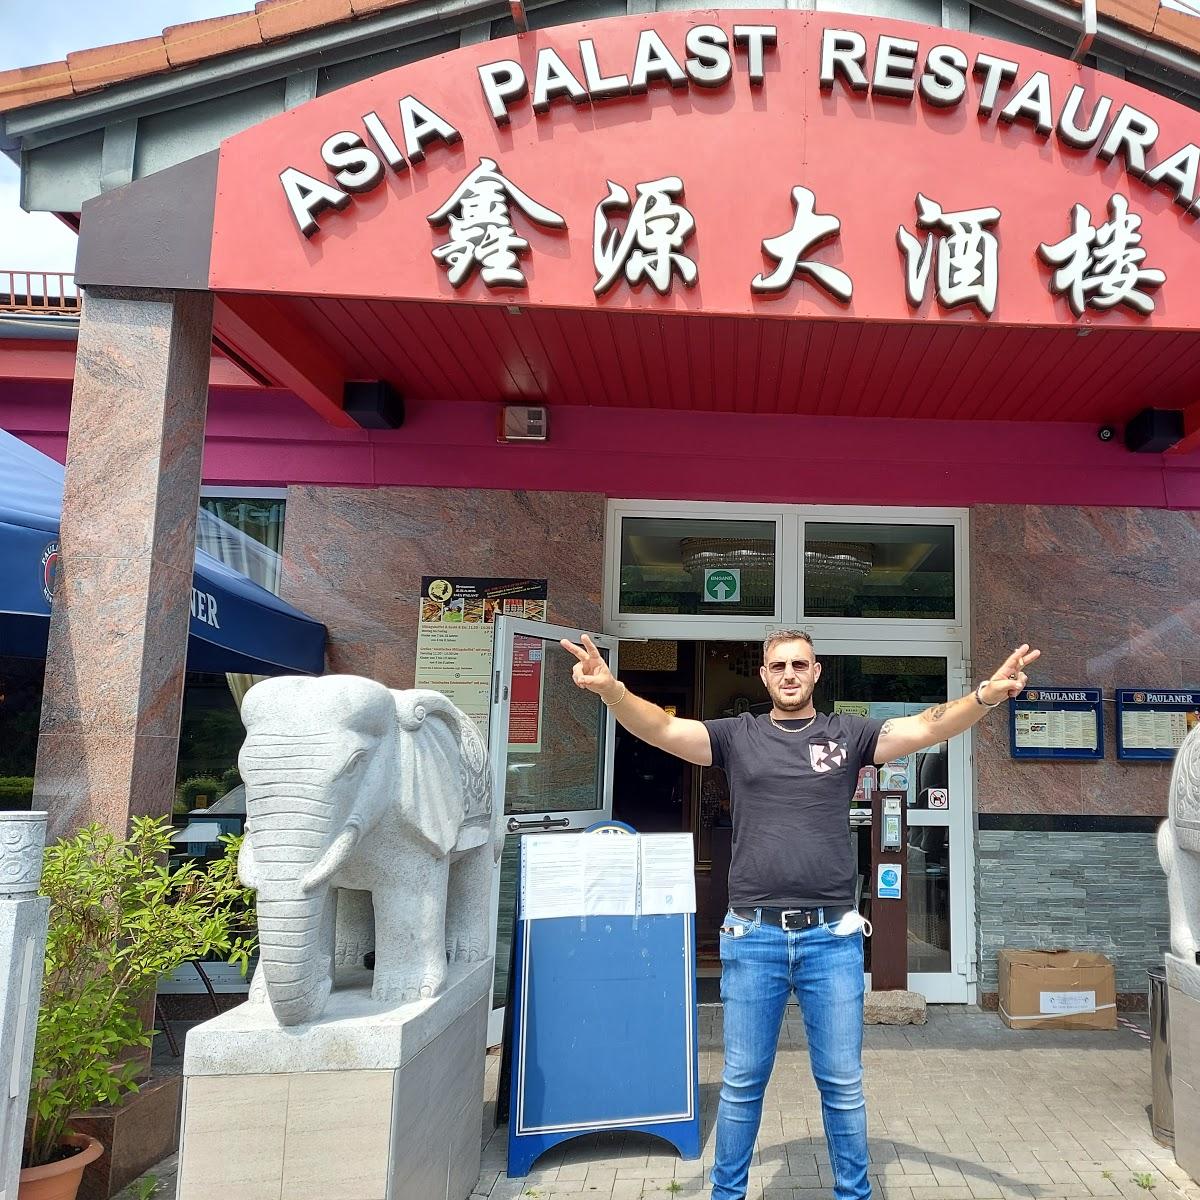 Restaurant "Asia Palast Bischberg" in  Bischberg